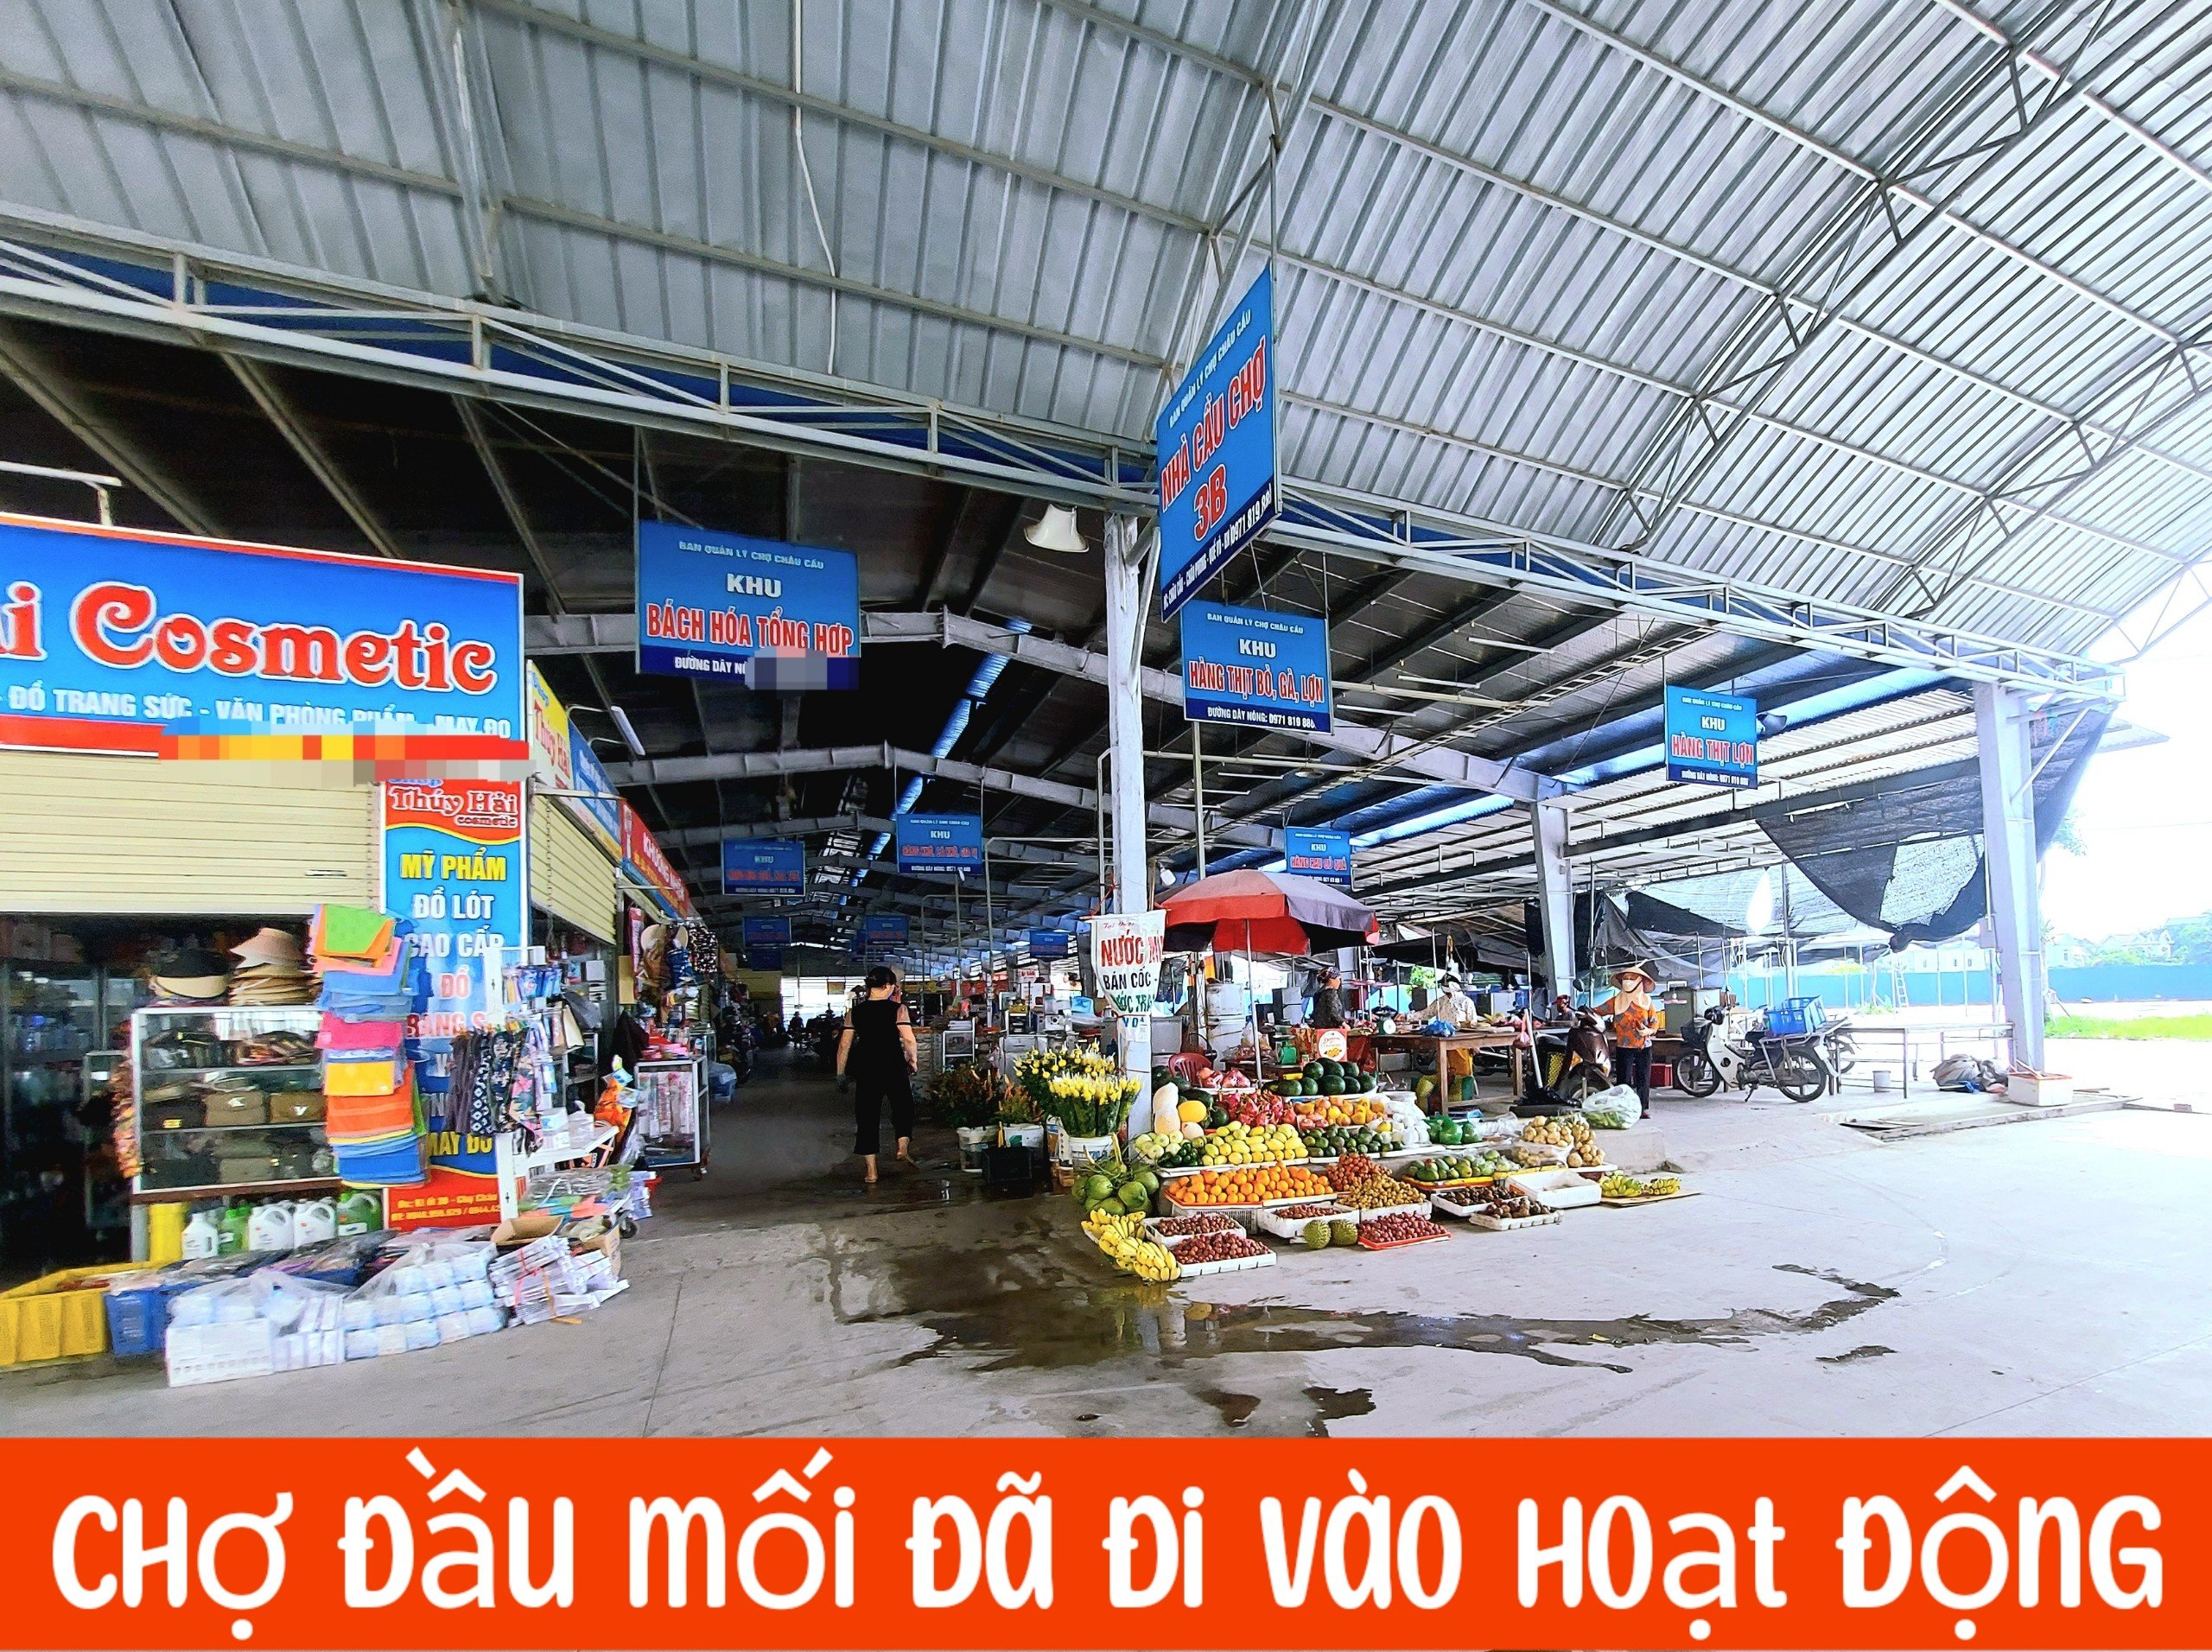 Shop chợ 3 tầng kinh doanh được luôn tại chợ đầu mối Châu Cầu, quy mô lớn nhất Quế Võ 3